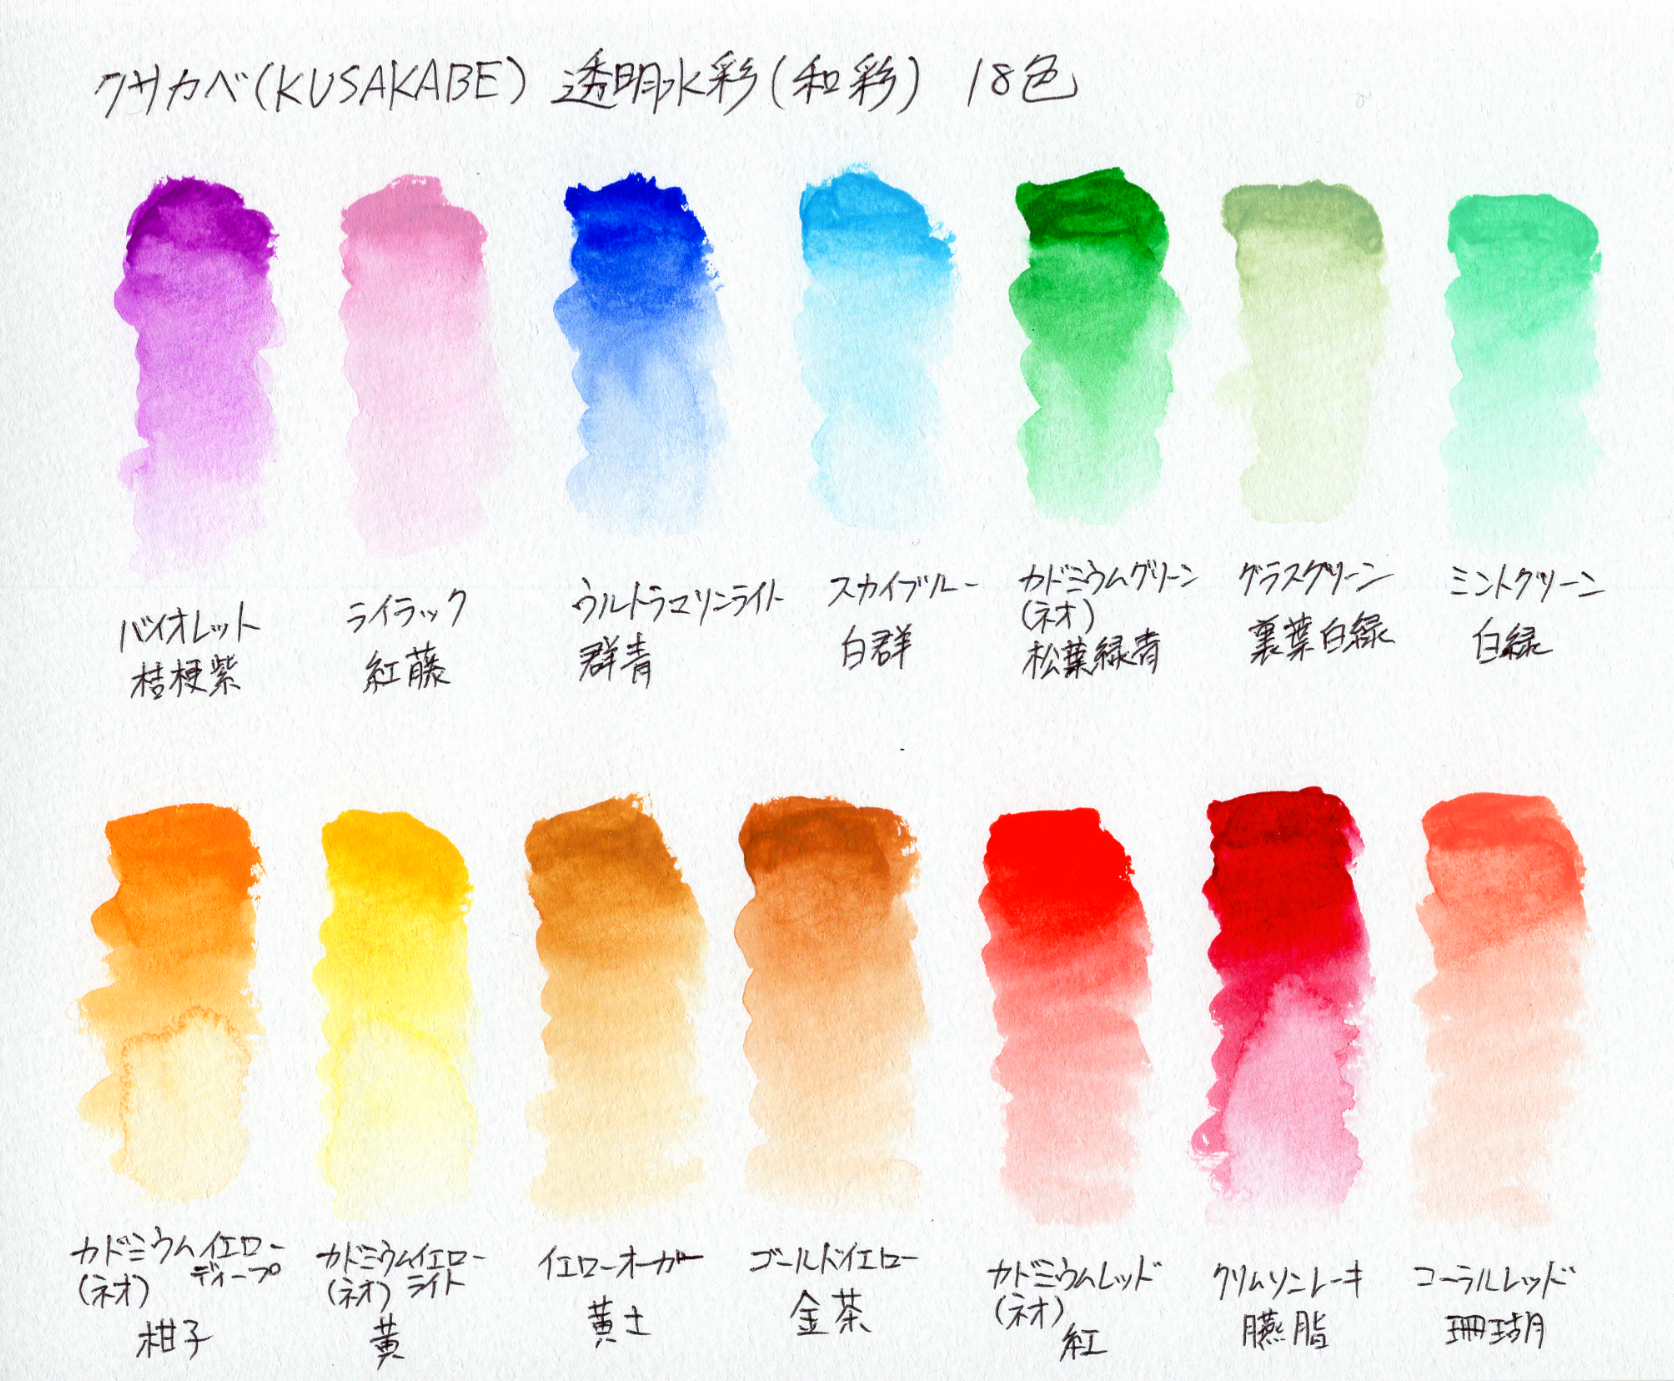 クサカベ Kusakabe 透明水彩 和彩18色の自作色見本と作成イラスト ダージのアトリ絵